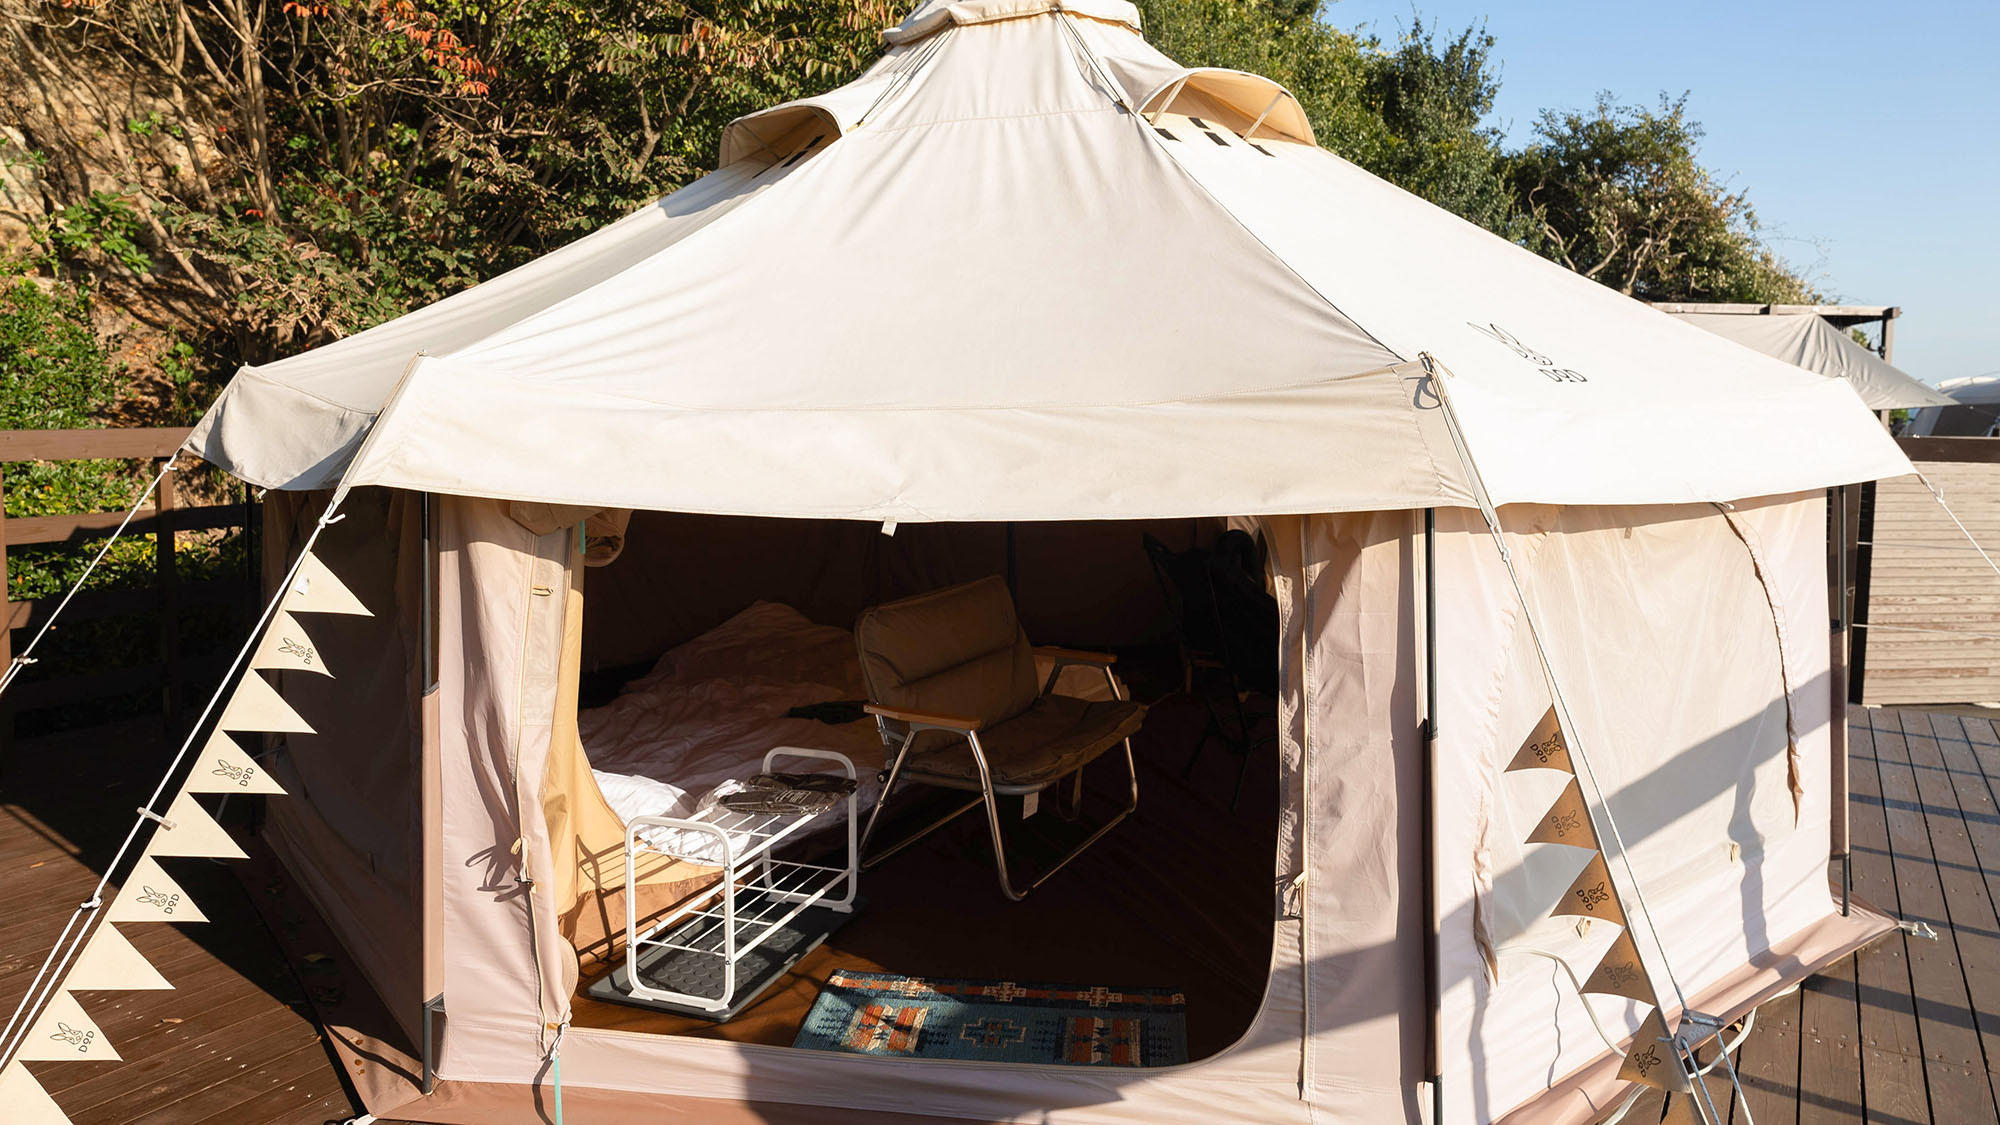 ・【Bサイト】豊かな緑に囲まれたテントです。新鮮な空気と風を感じてください